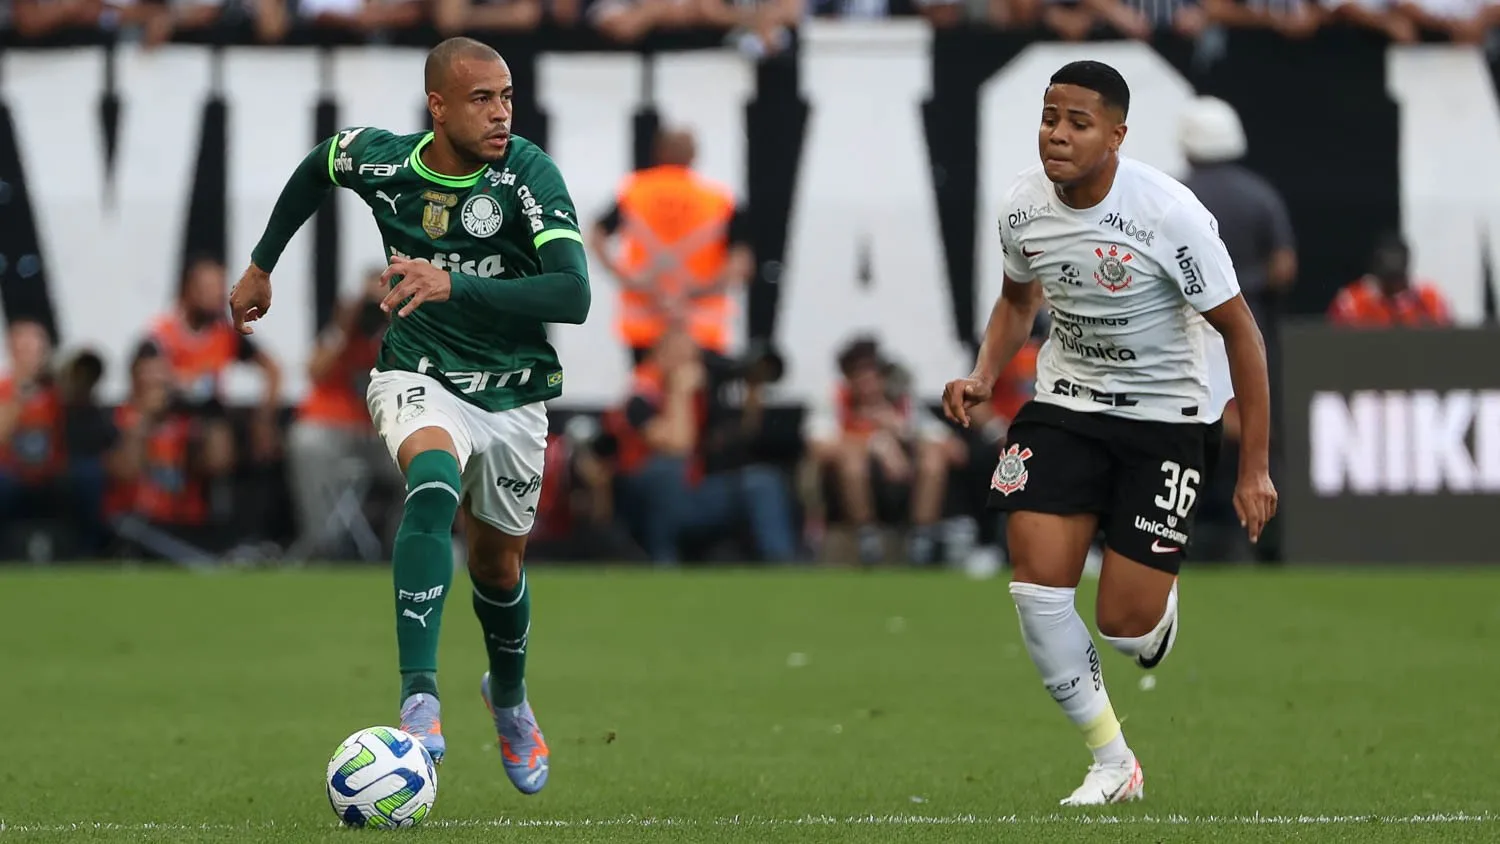 Luxemburgo nega pressão interna no Cornithians após empate contra Palmeiras: 